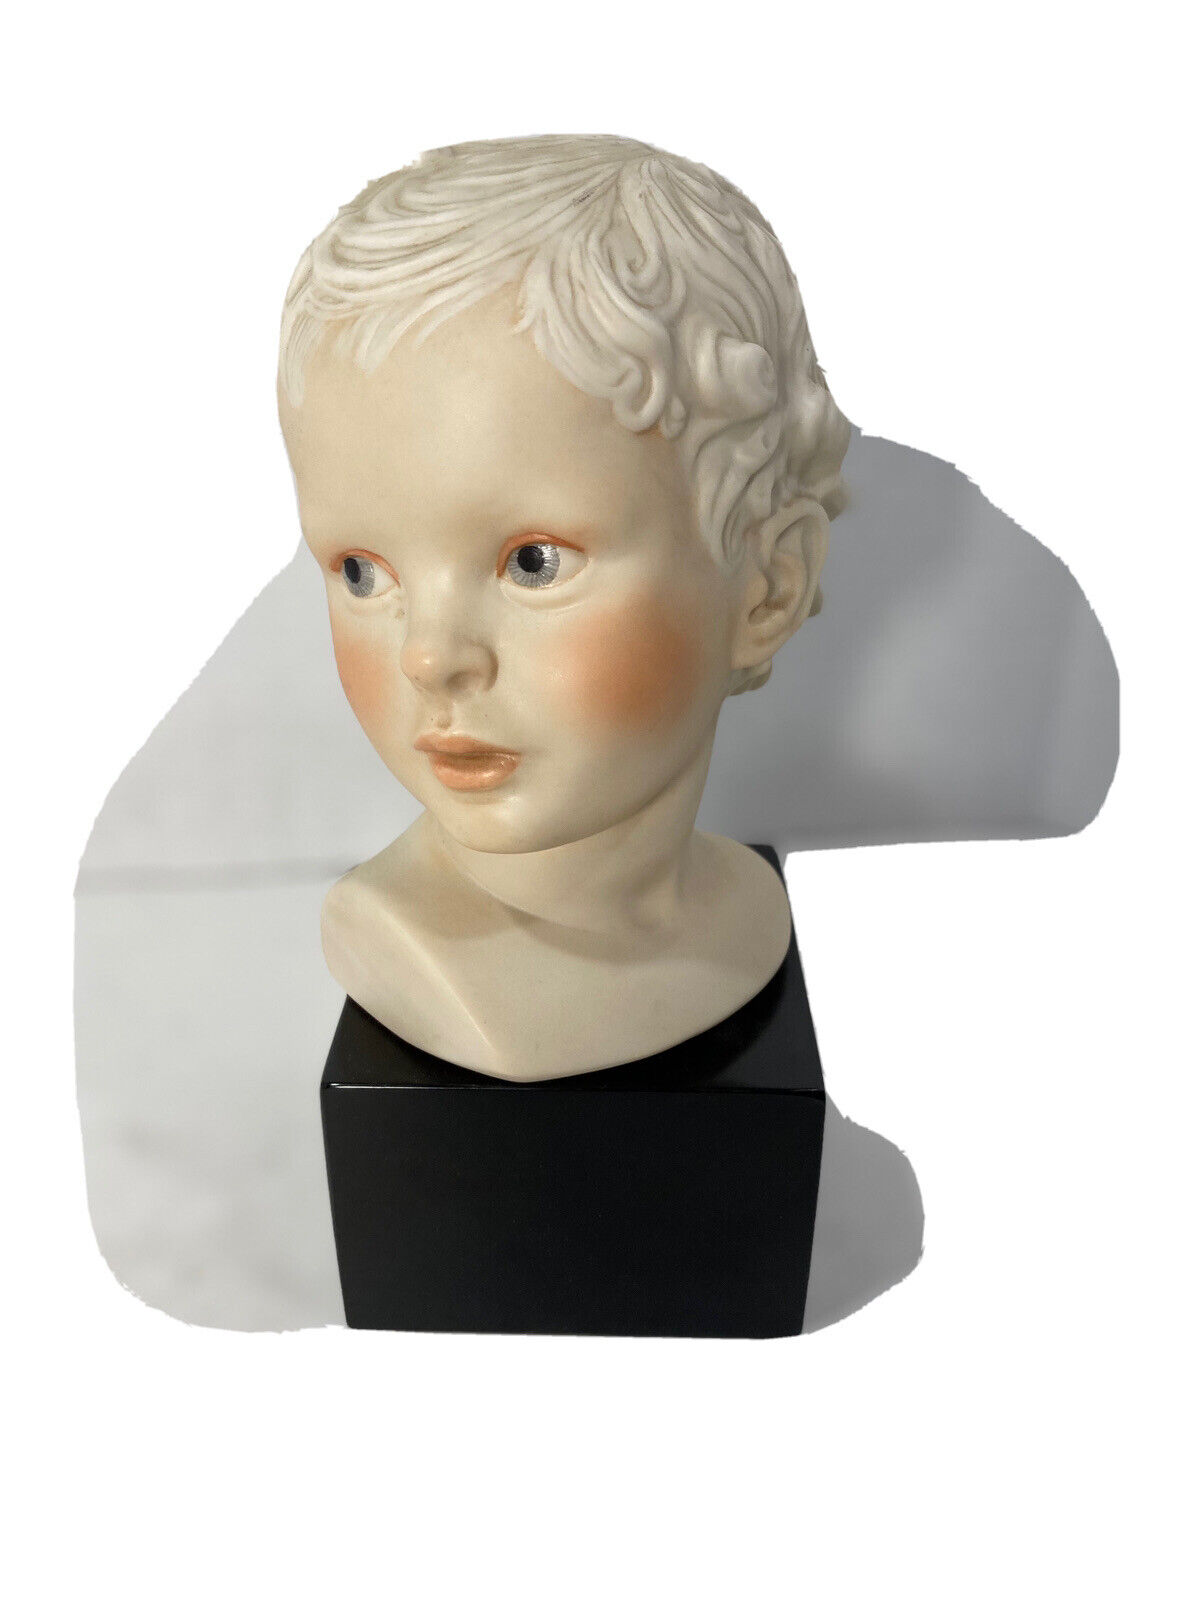 Vtg 70’s Cybis Eros Cupid Porcelain Boy 10” Figurine on Base-Signed-USA Made